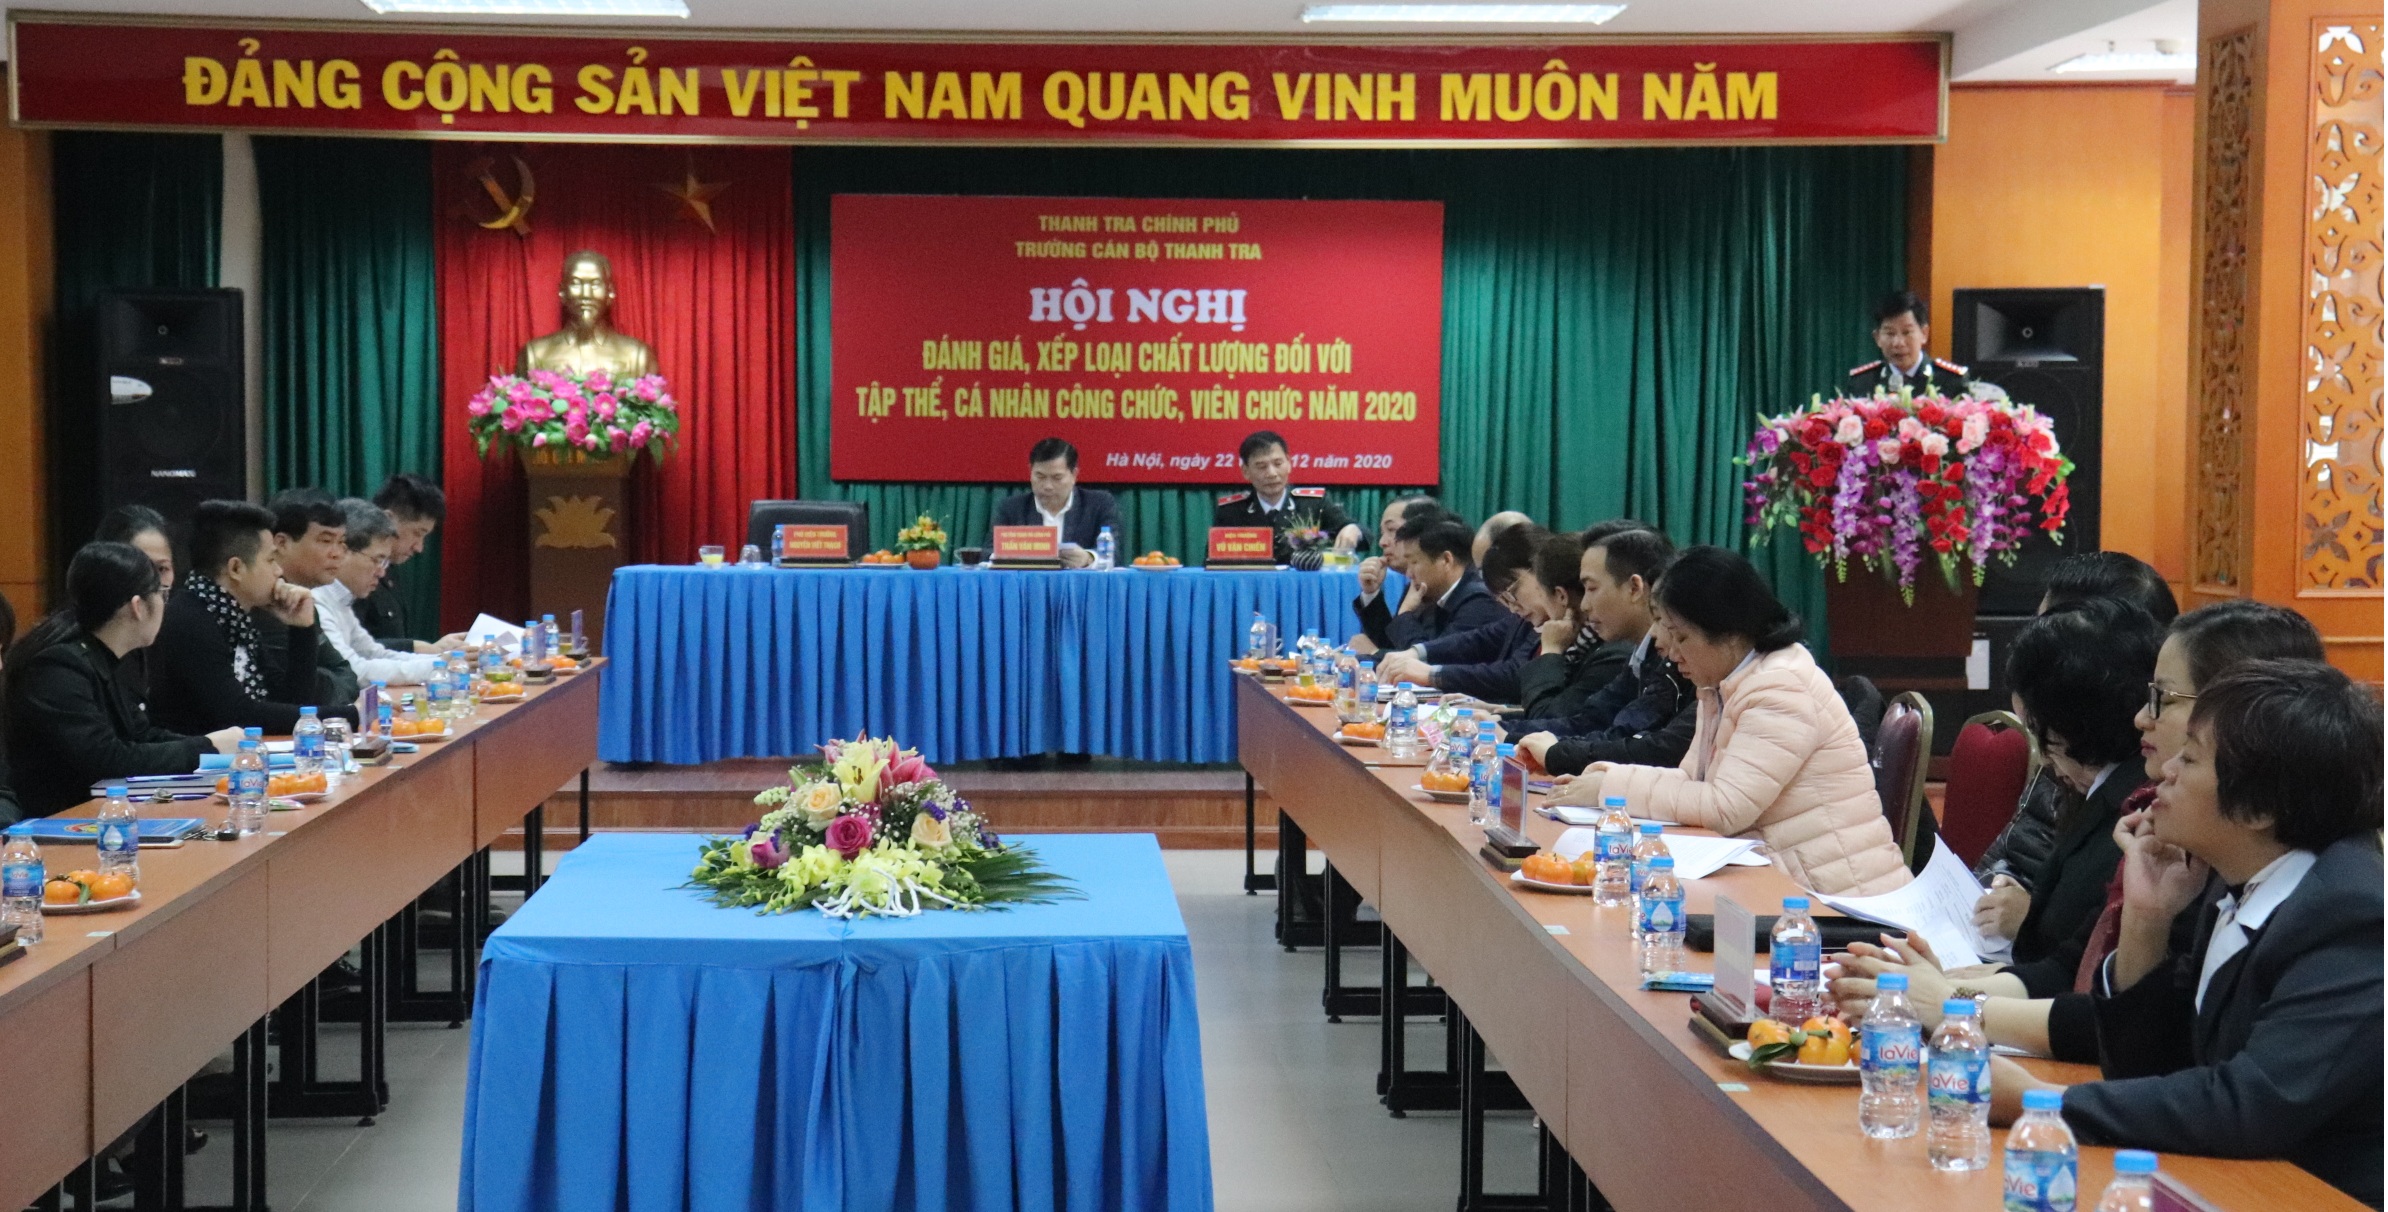 Ông Nguyễn Viết Thạch Phó Hiệu trưởng Trg CBTT báo cáo tổng kết công tác năm 2020